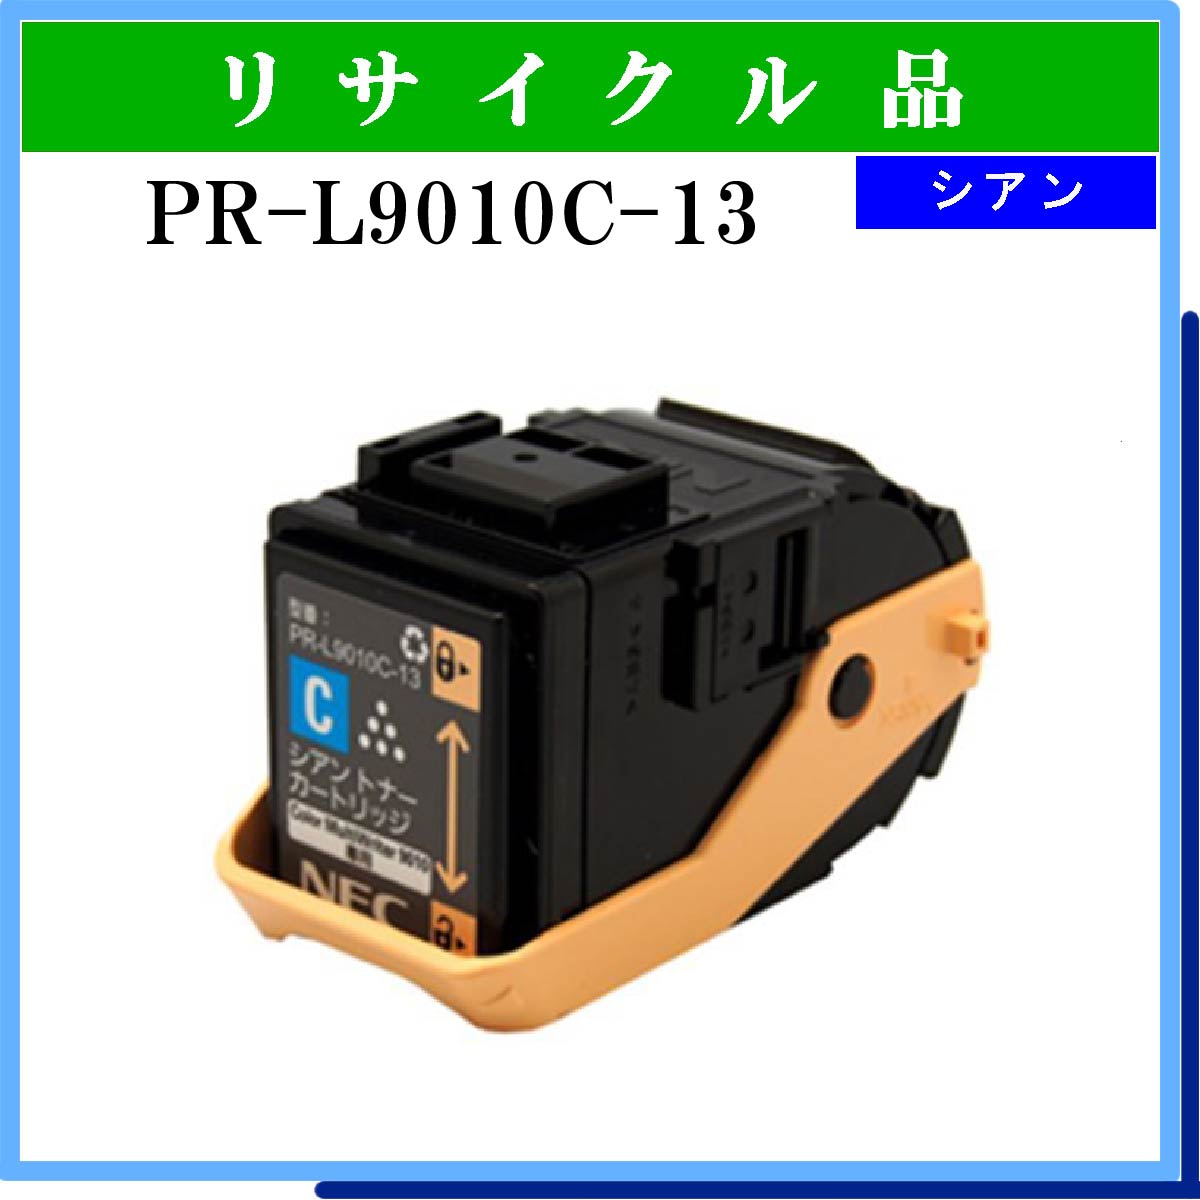 PR-L9010C-13